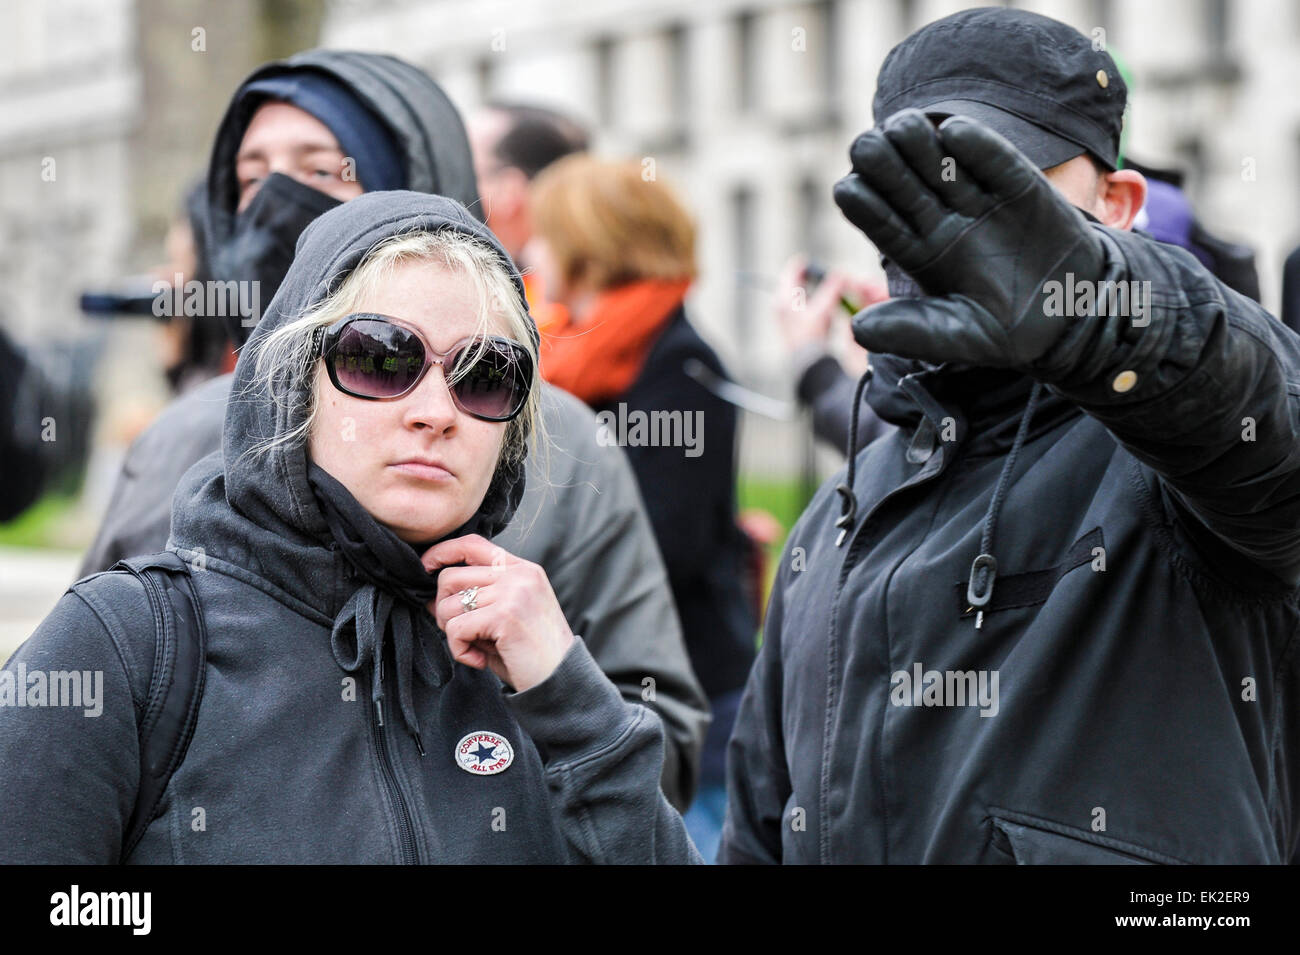 Antifaschisten an an einer Demonstration gegen Pergida in Whitehall fotografiert werden unglücklich. Stockfoto